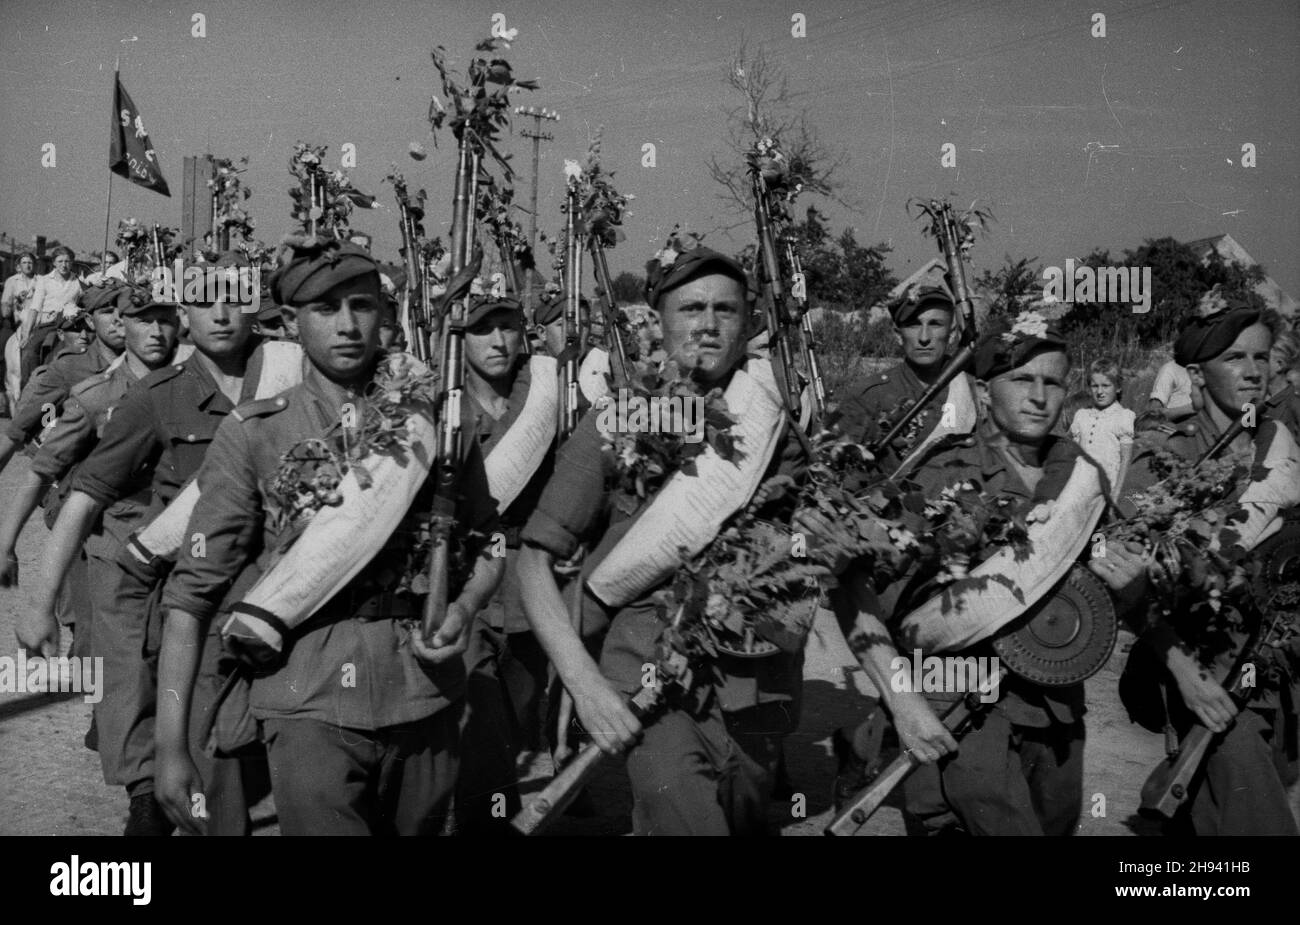 Goleniów, 1947-07. Sztafeta pod has³em - Szlakiem I Armii Wojska Polskiego, towarzysz¹ca obchodom Œwiêta Morza (Dni Morza). Nz. oddzia³ piechoty maszeruje ulicami miasta. po/gr  PAP    Dok³adny dzieñ wydarzenia nieustalony.      Goleniow, July 1947. A relay under the slogan: following the route of the 1 Polish Army which accompany the Days of the Sea. Pictured: a military unit marching throught the city.   po/gr  PAP Stock Photo